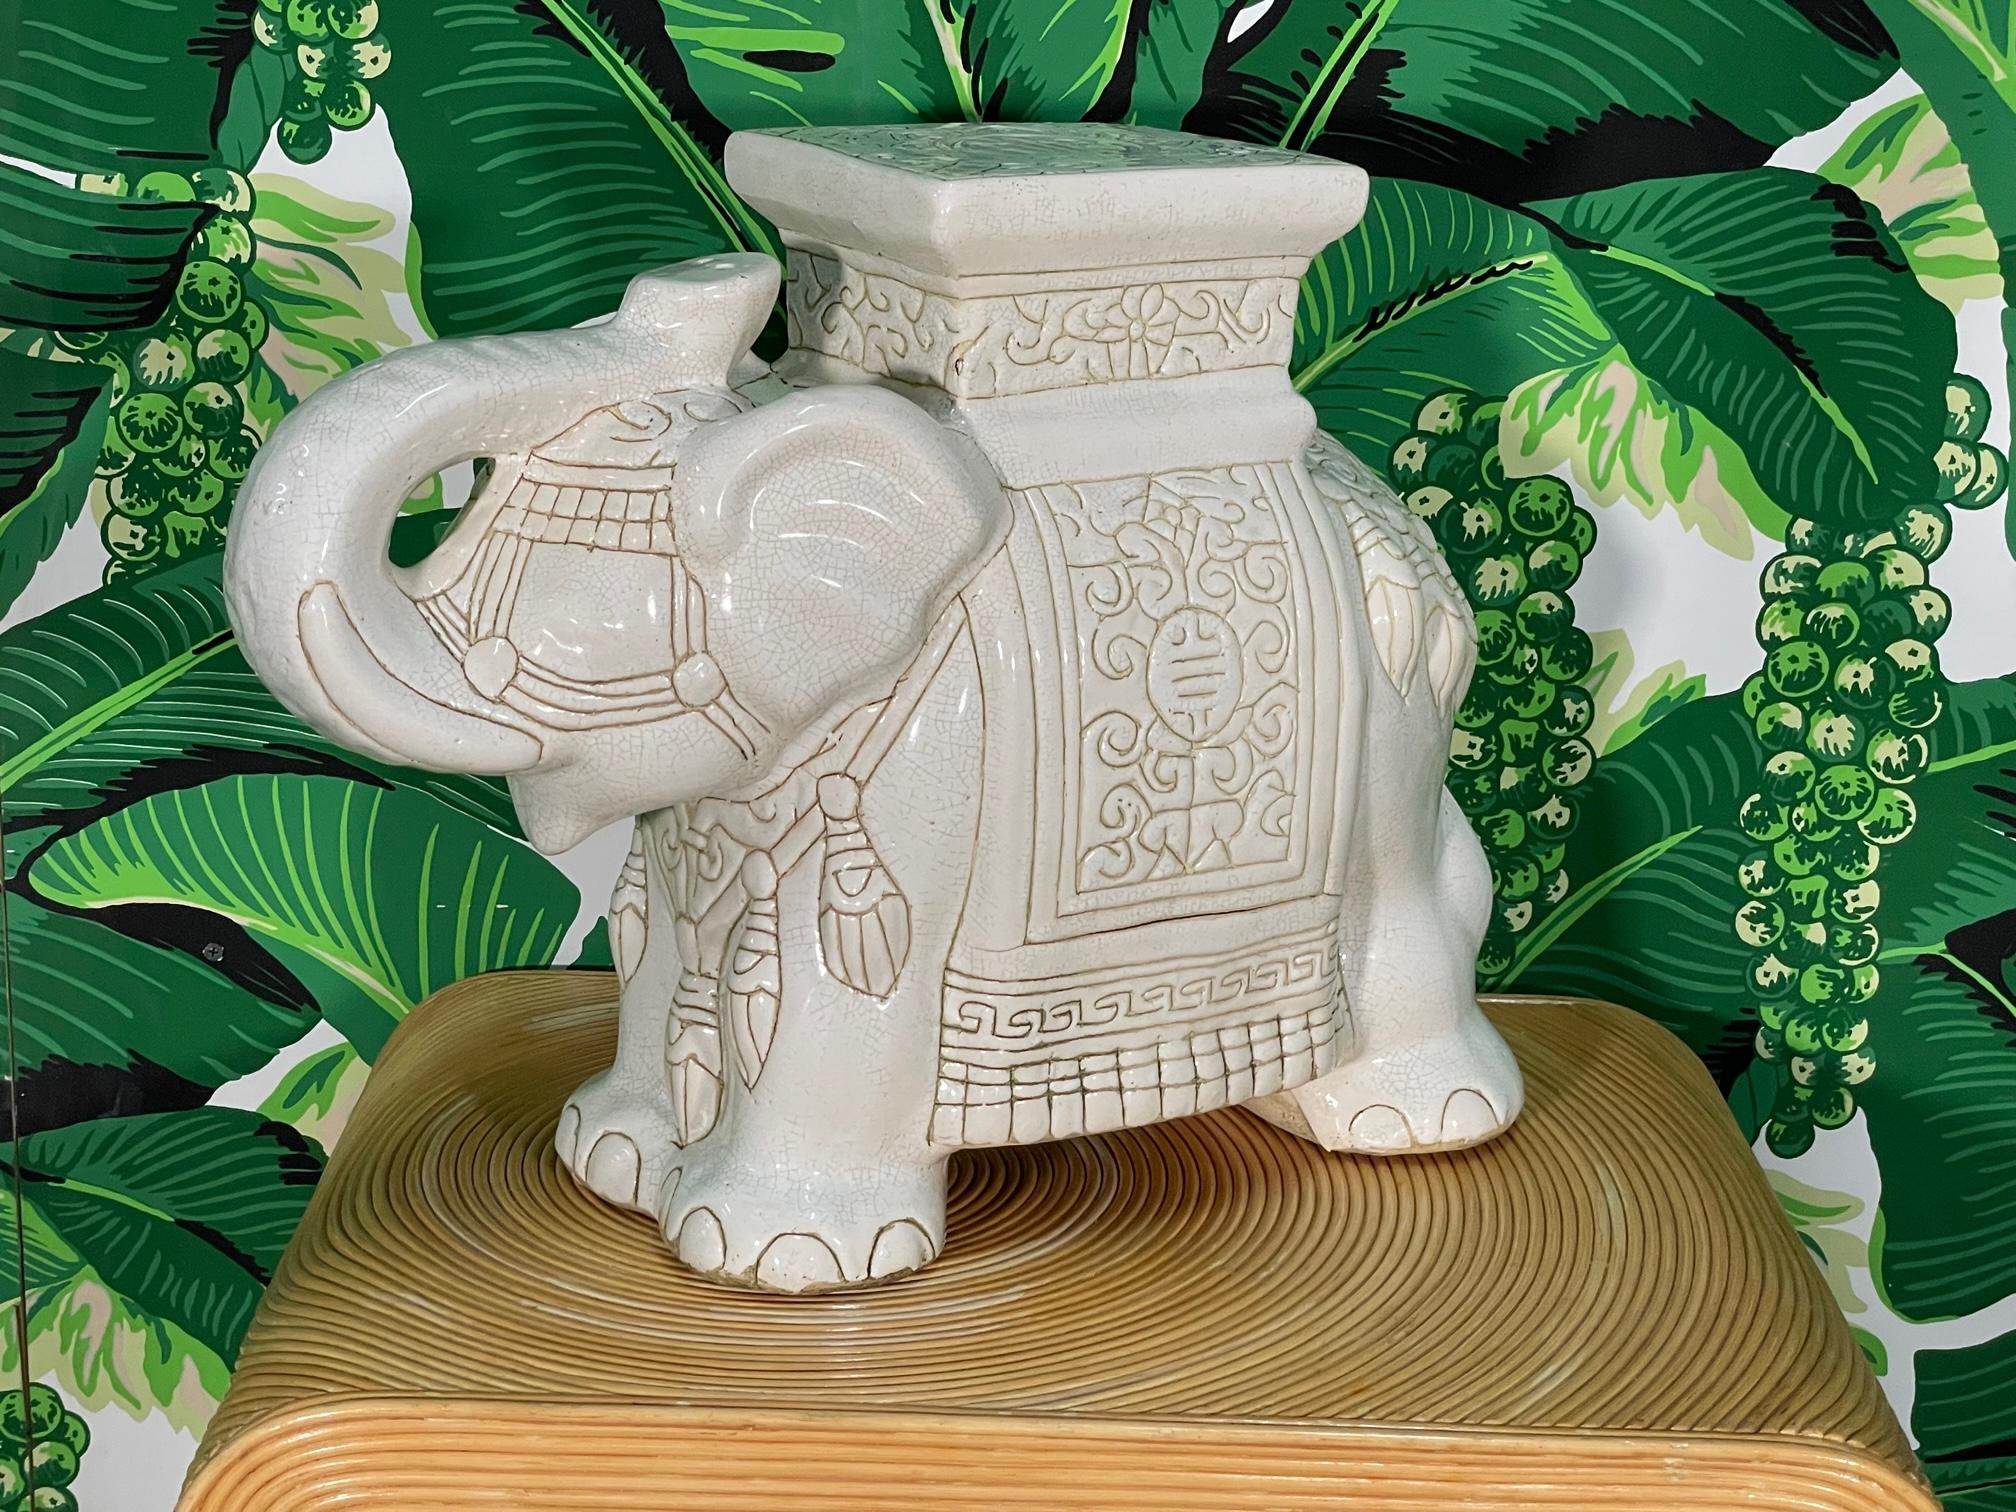 Keramischer Elefanten-Gartensitz (oder Beistelltisch für Cocktails) mit glänzender, glasierter Oberfläche und erhöhtem Rüssel als Glücksbringer. Guter Zustand mit altersbedingten Unvollkommenheiten, siehe Fotos für Zustandsdetails. 
Für einen